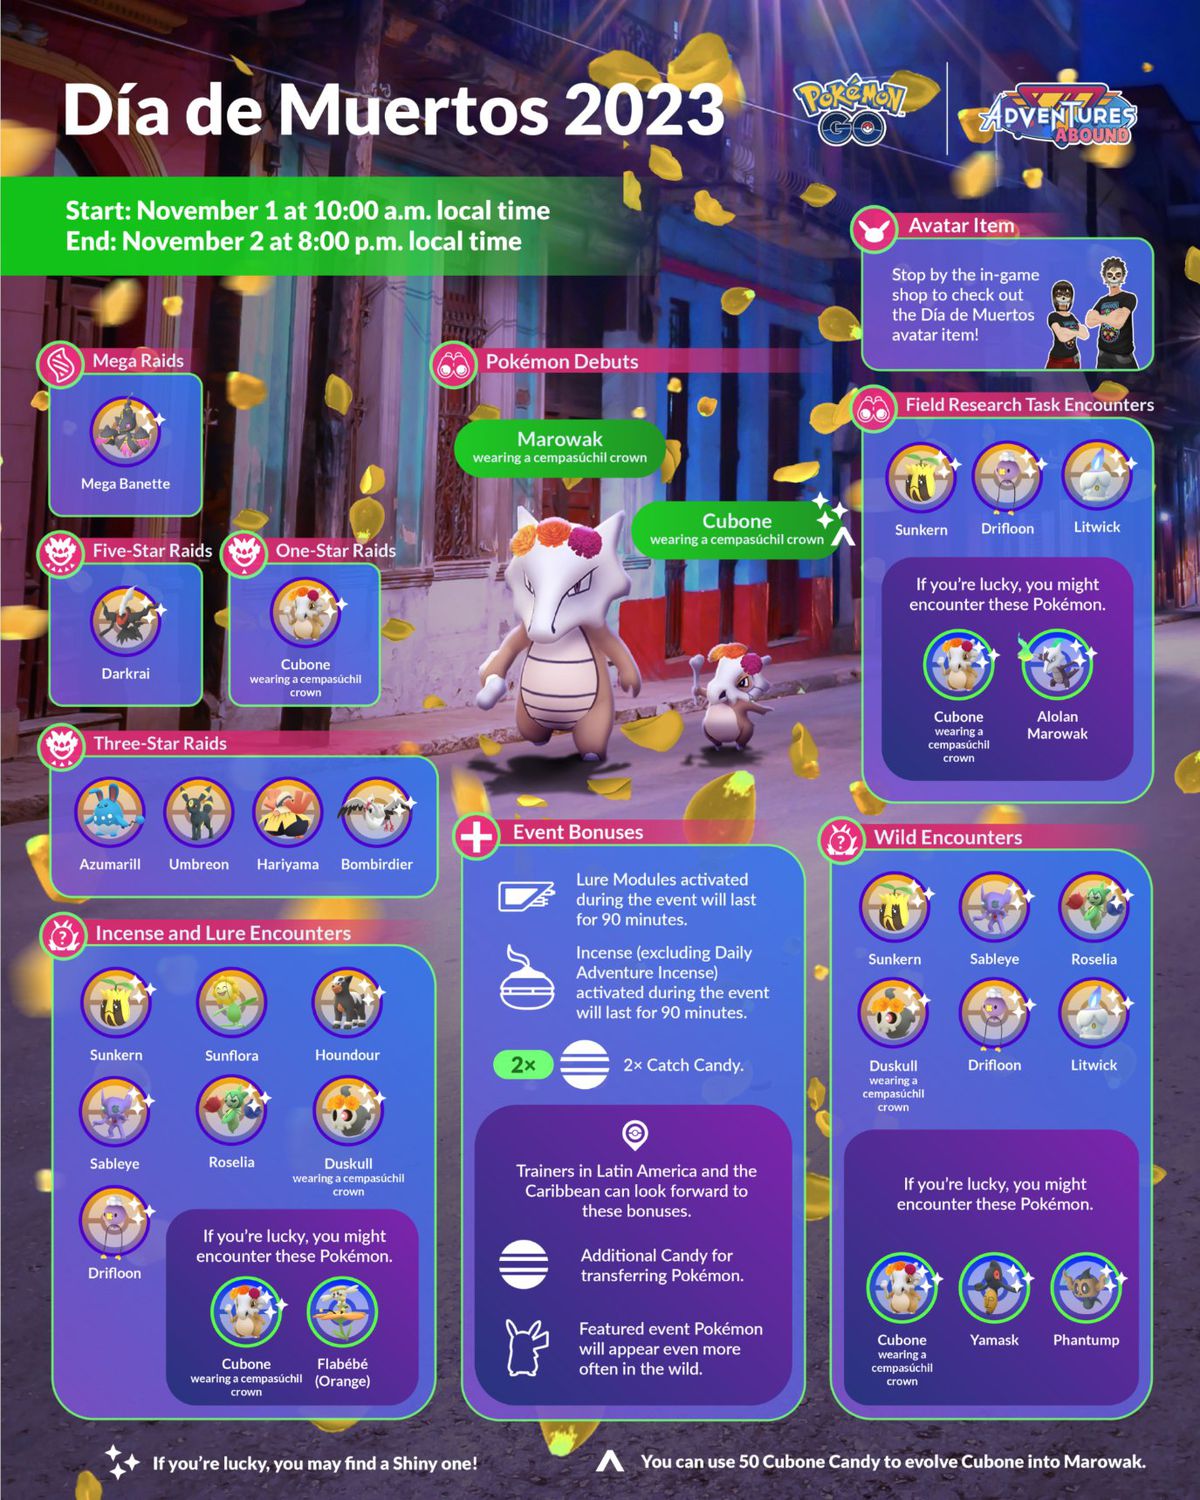 En infografik för Pokémon Gos evenemang Dia de Muertos 2023, som visar Marowak och Cubone bära en cempasúchil-krona.